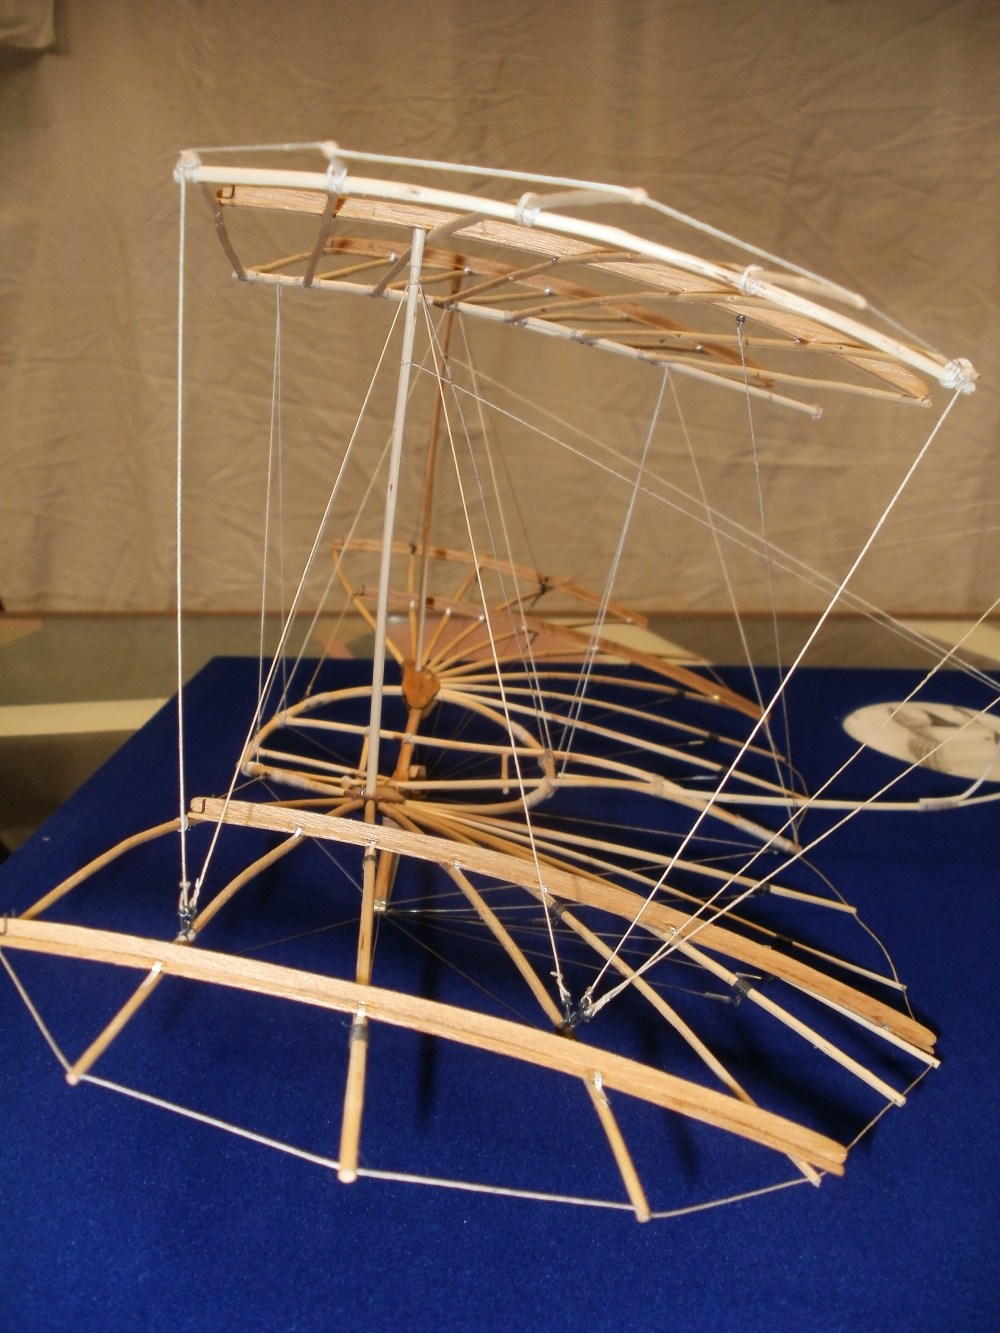 Otto Lilienthals Normal-Segelapparat als großer Doppeldecker aus dem Jahr 1894. Das obere Tragdeck steht auf verlängerten Spanntürmen und ist nach unten zum Hauptdeck abgespannt. Eigenbau im
    Maßstab 1/15